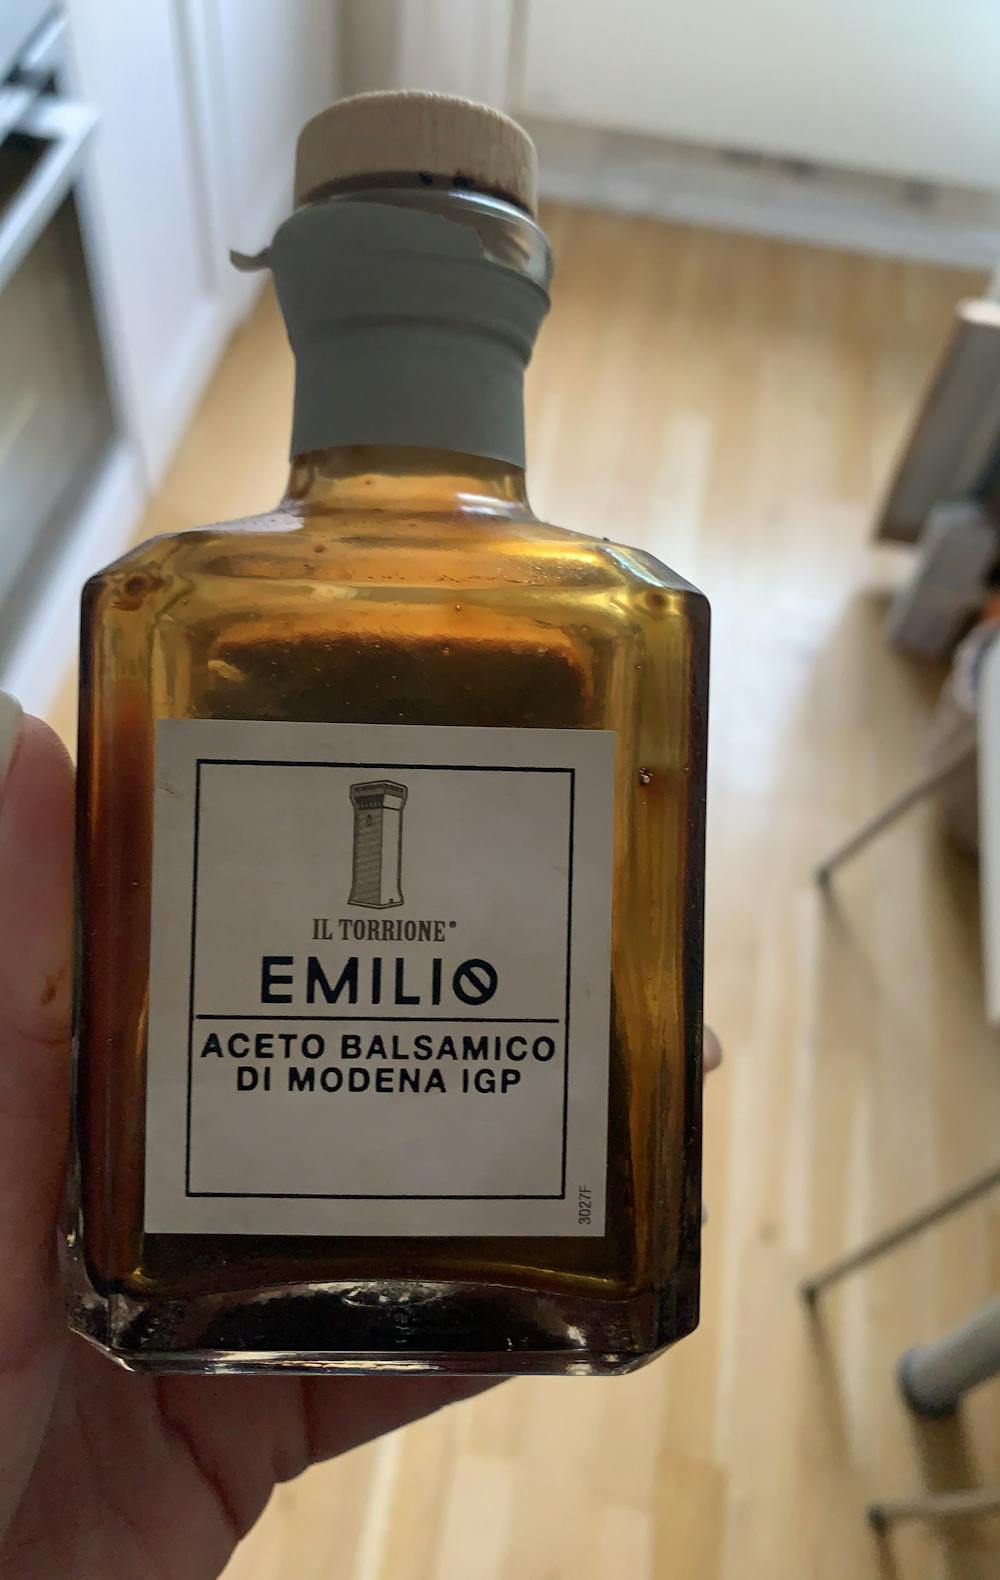 Aceto balsamico di modena igp, Emilio